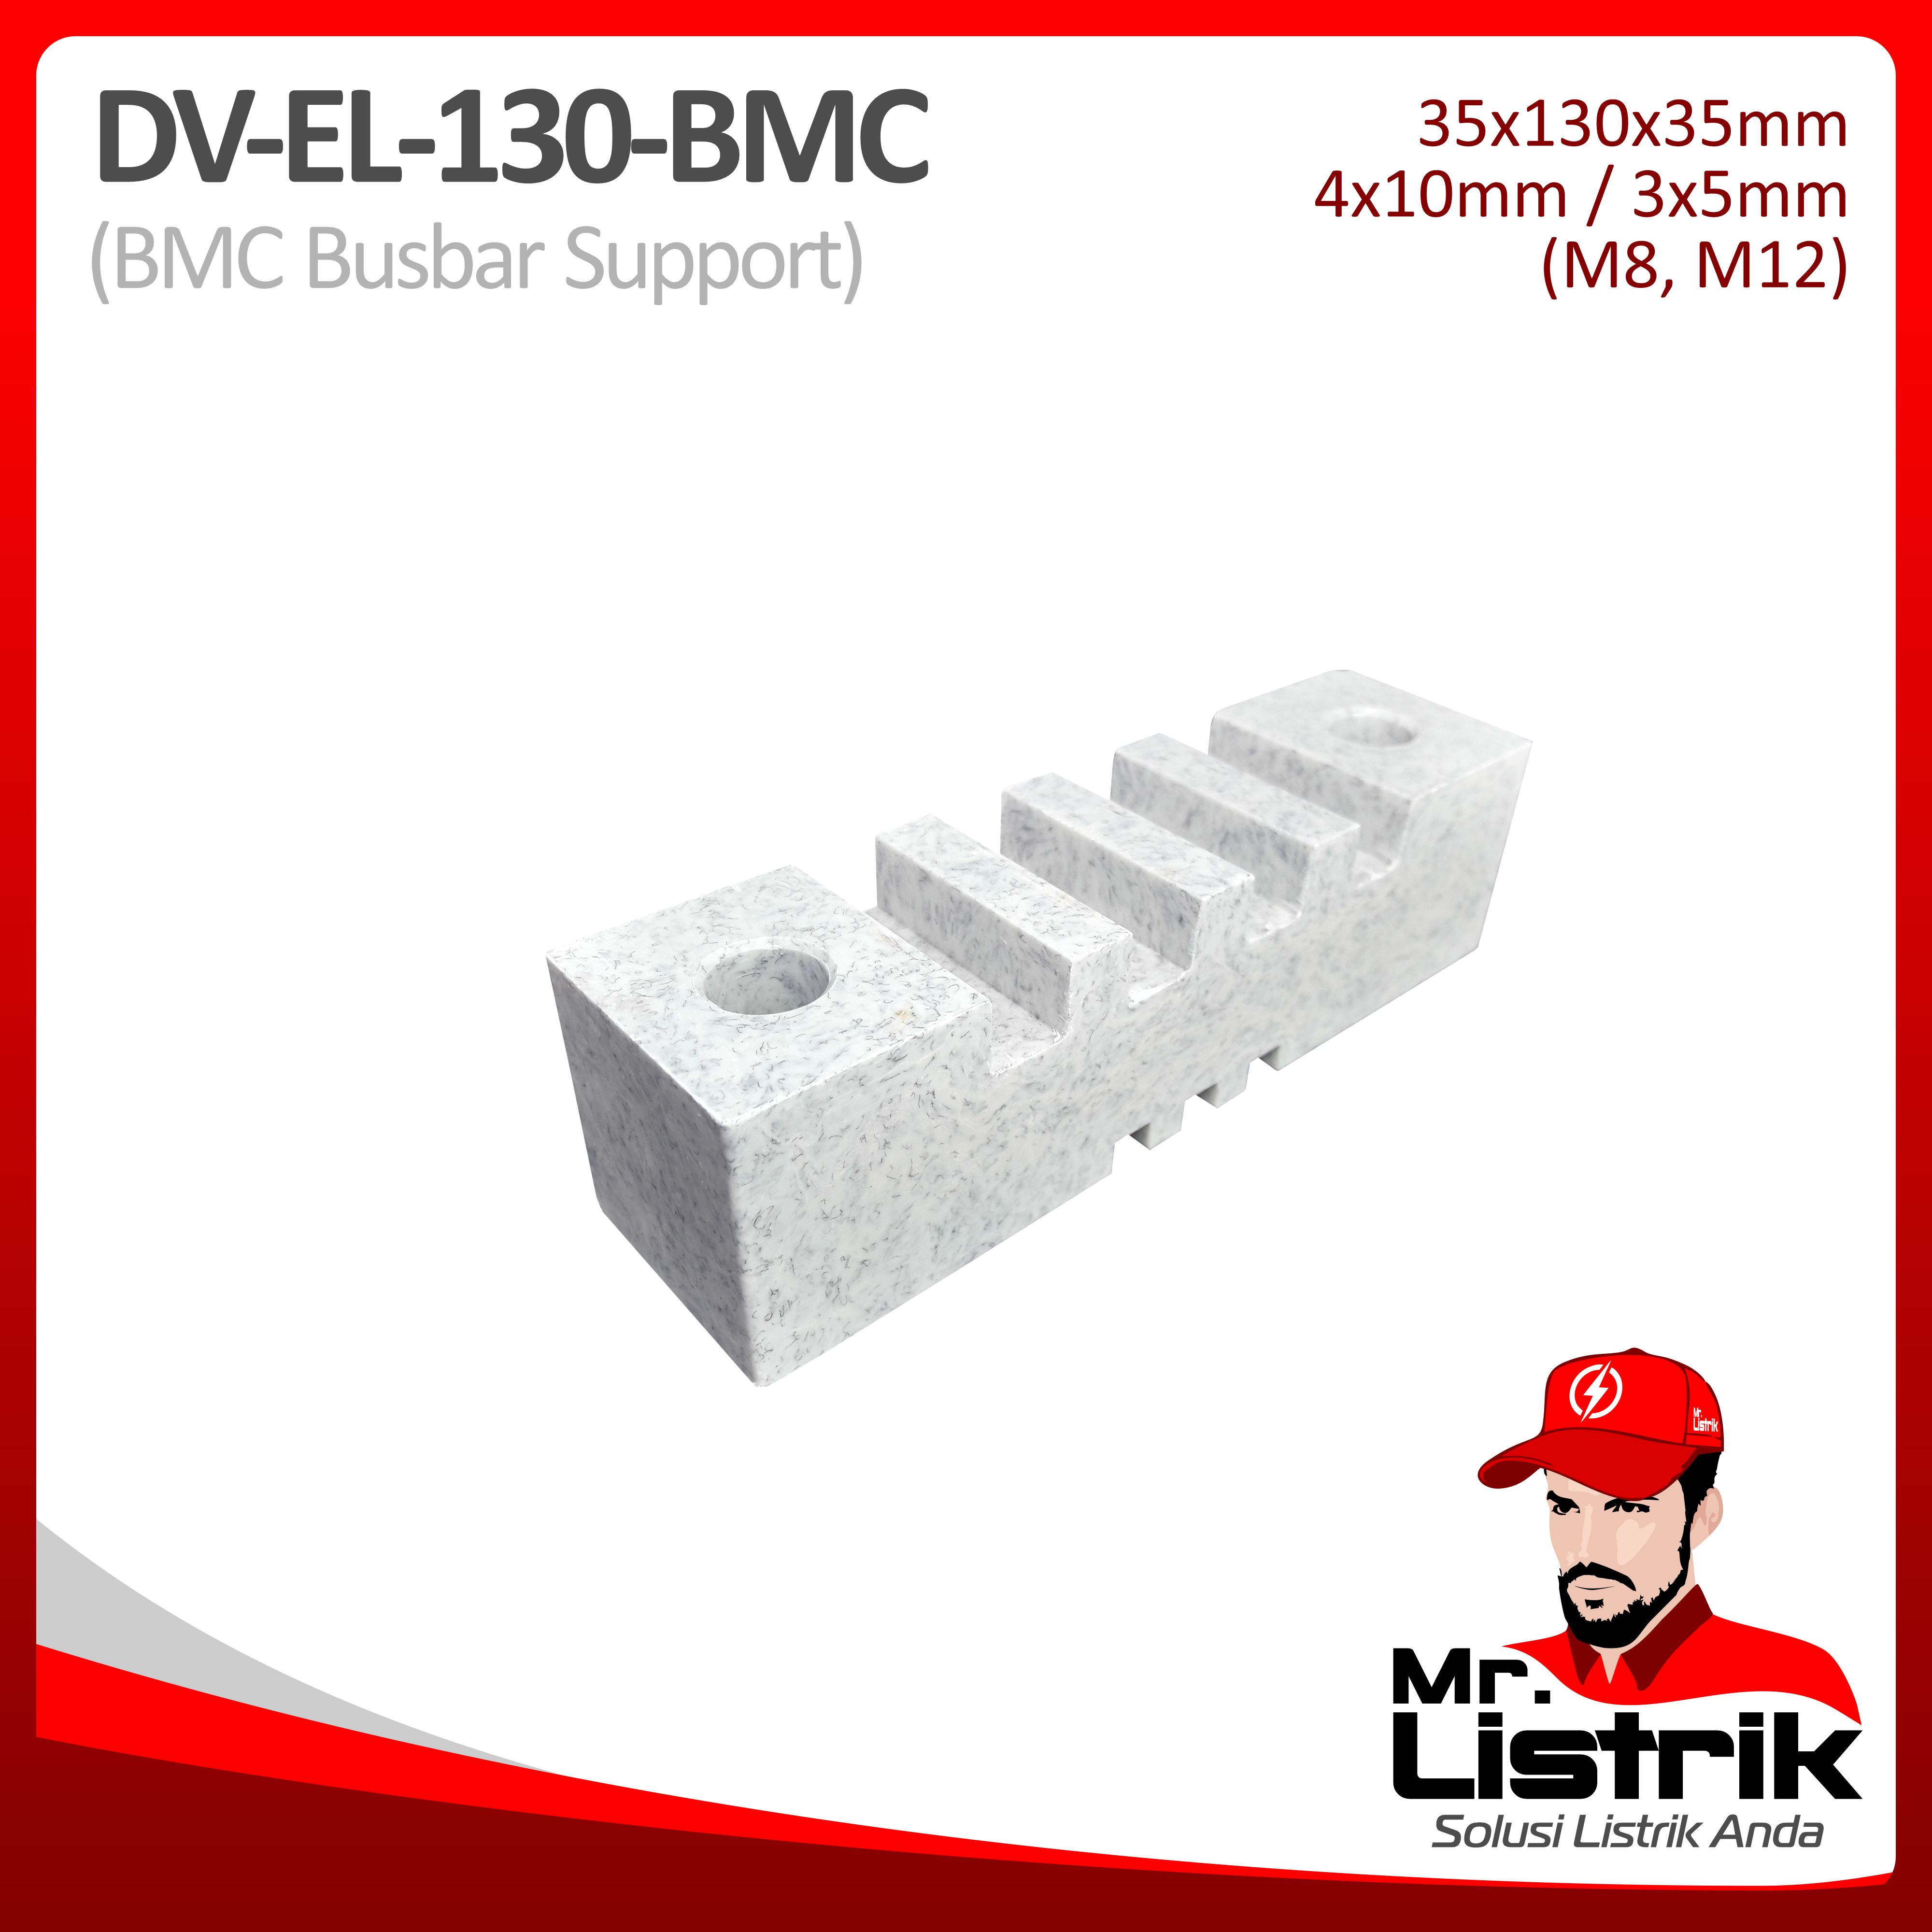 Busbar Support BMC DV EL-130-BMC